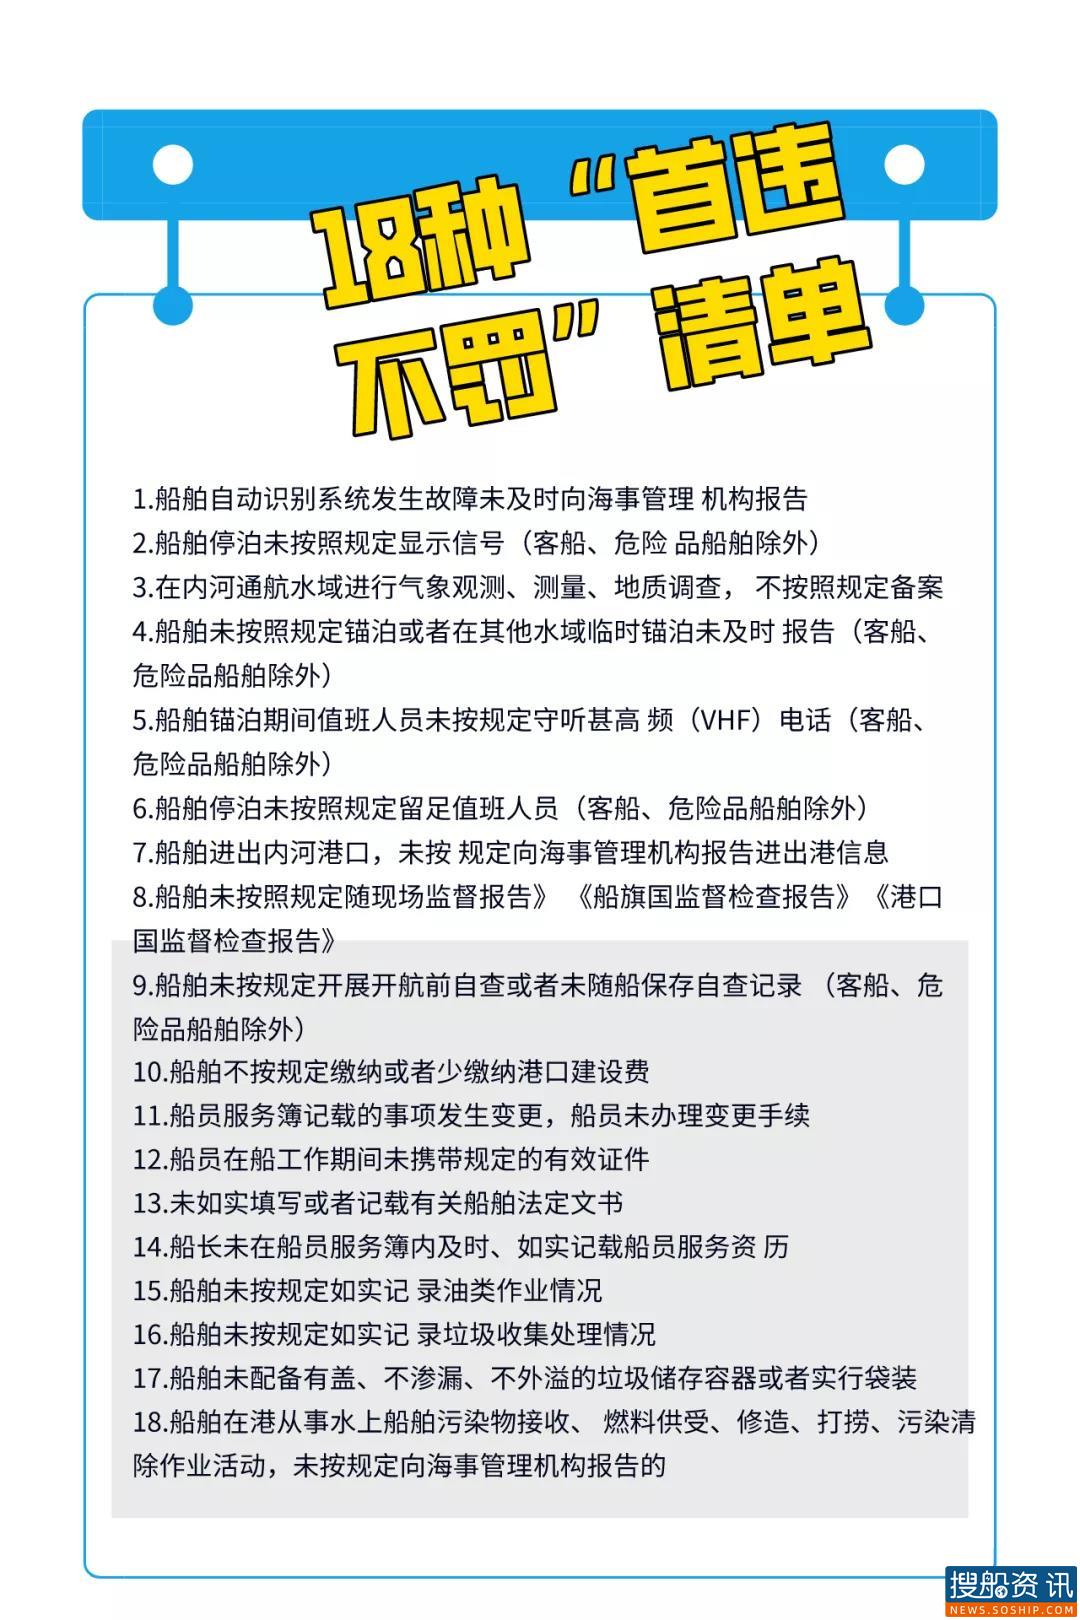 即日起，长江海事对这18种违法行为“首违不罚”！